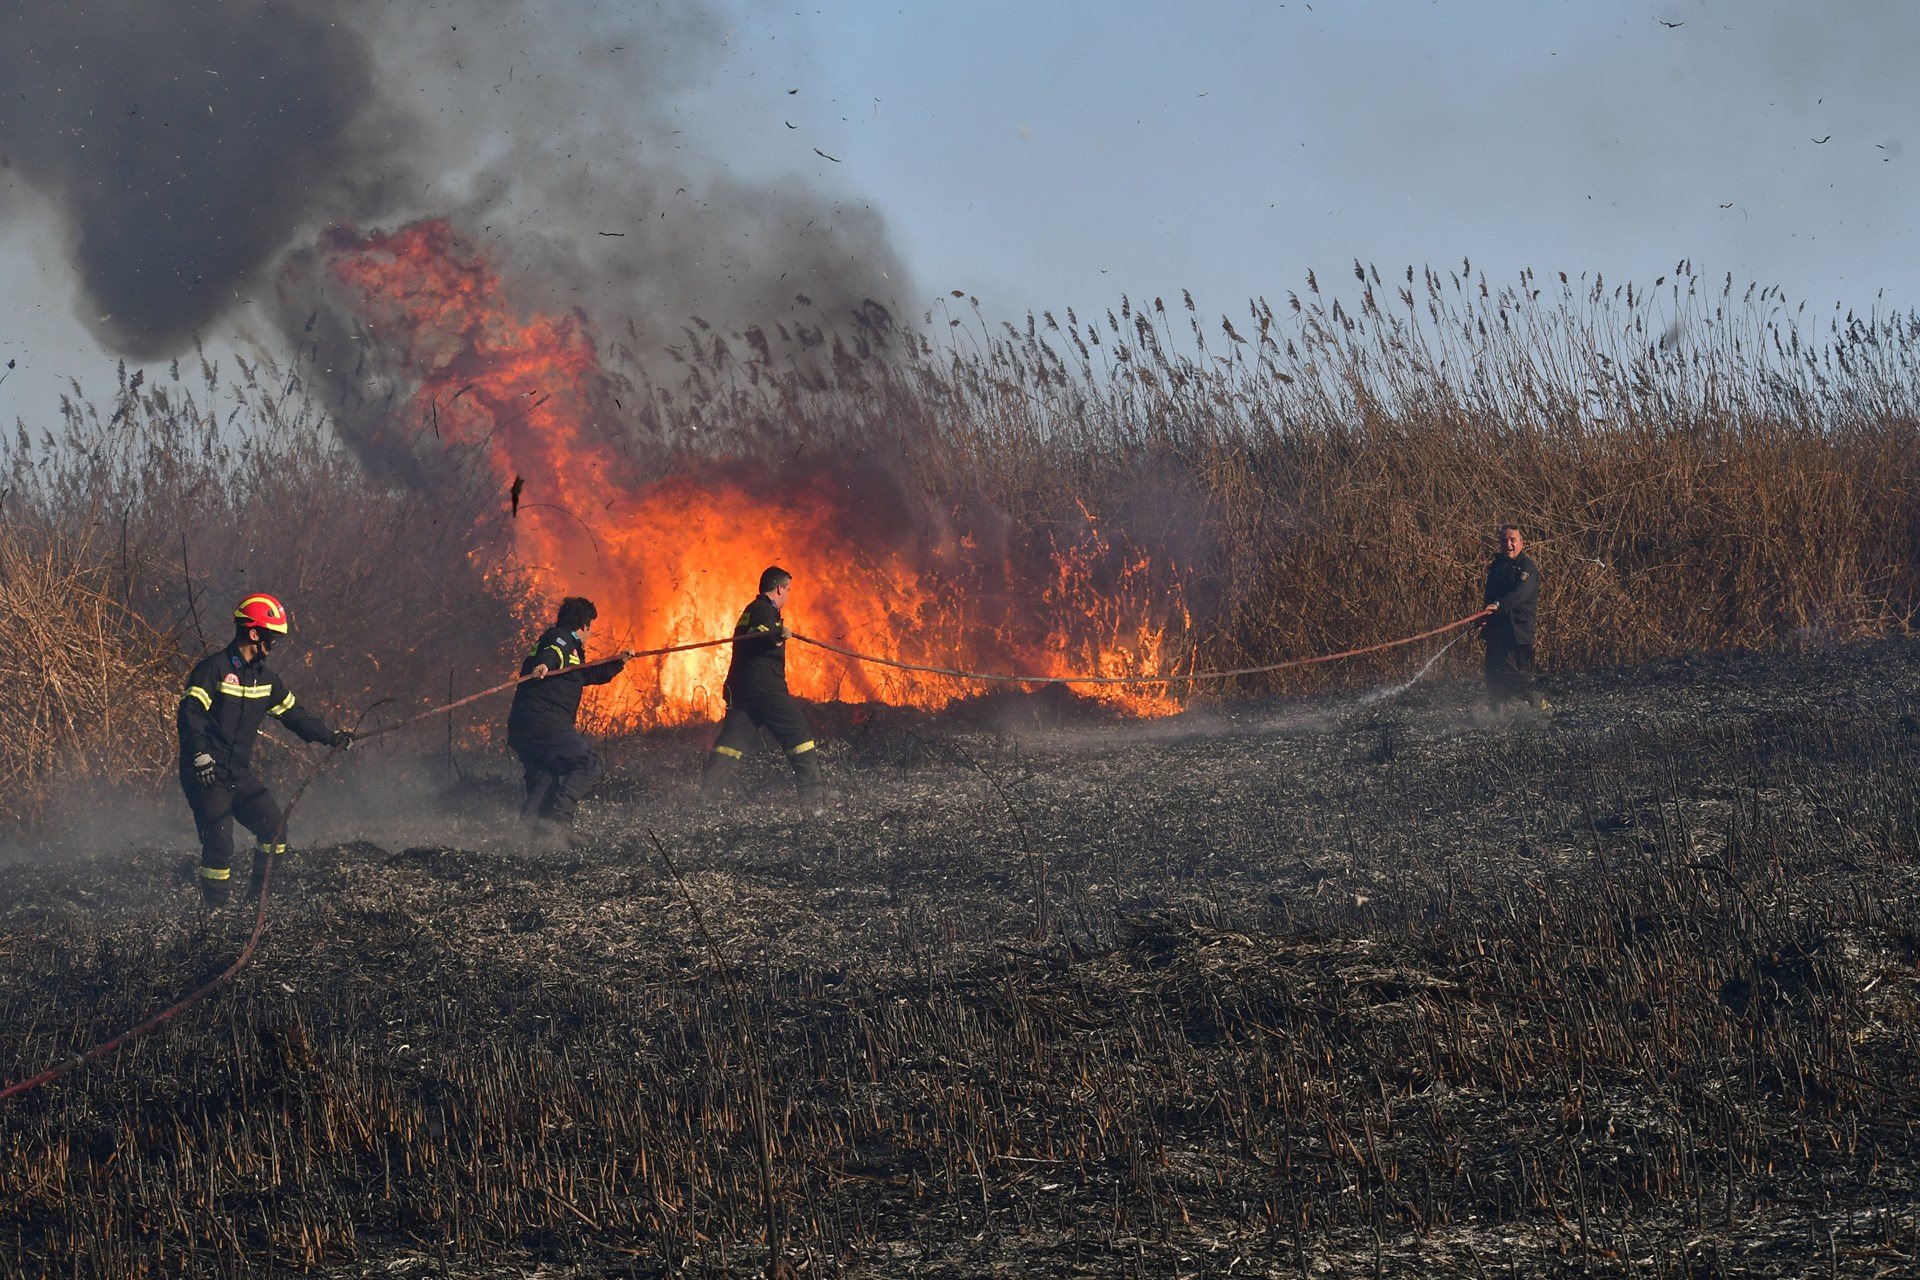 Μαίνεται μεγάλη πυρκαγιά μεταξύ Γέρας και Πλωμαρίου- Δυσχερής η κατάσταση λόγω ισχυρών ανέμων